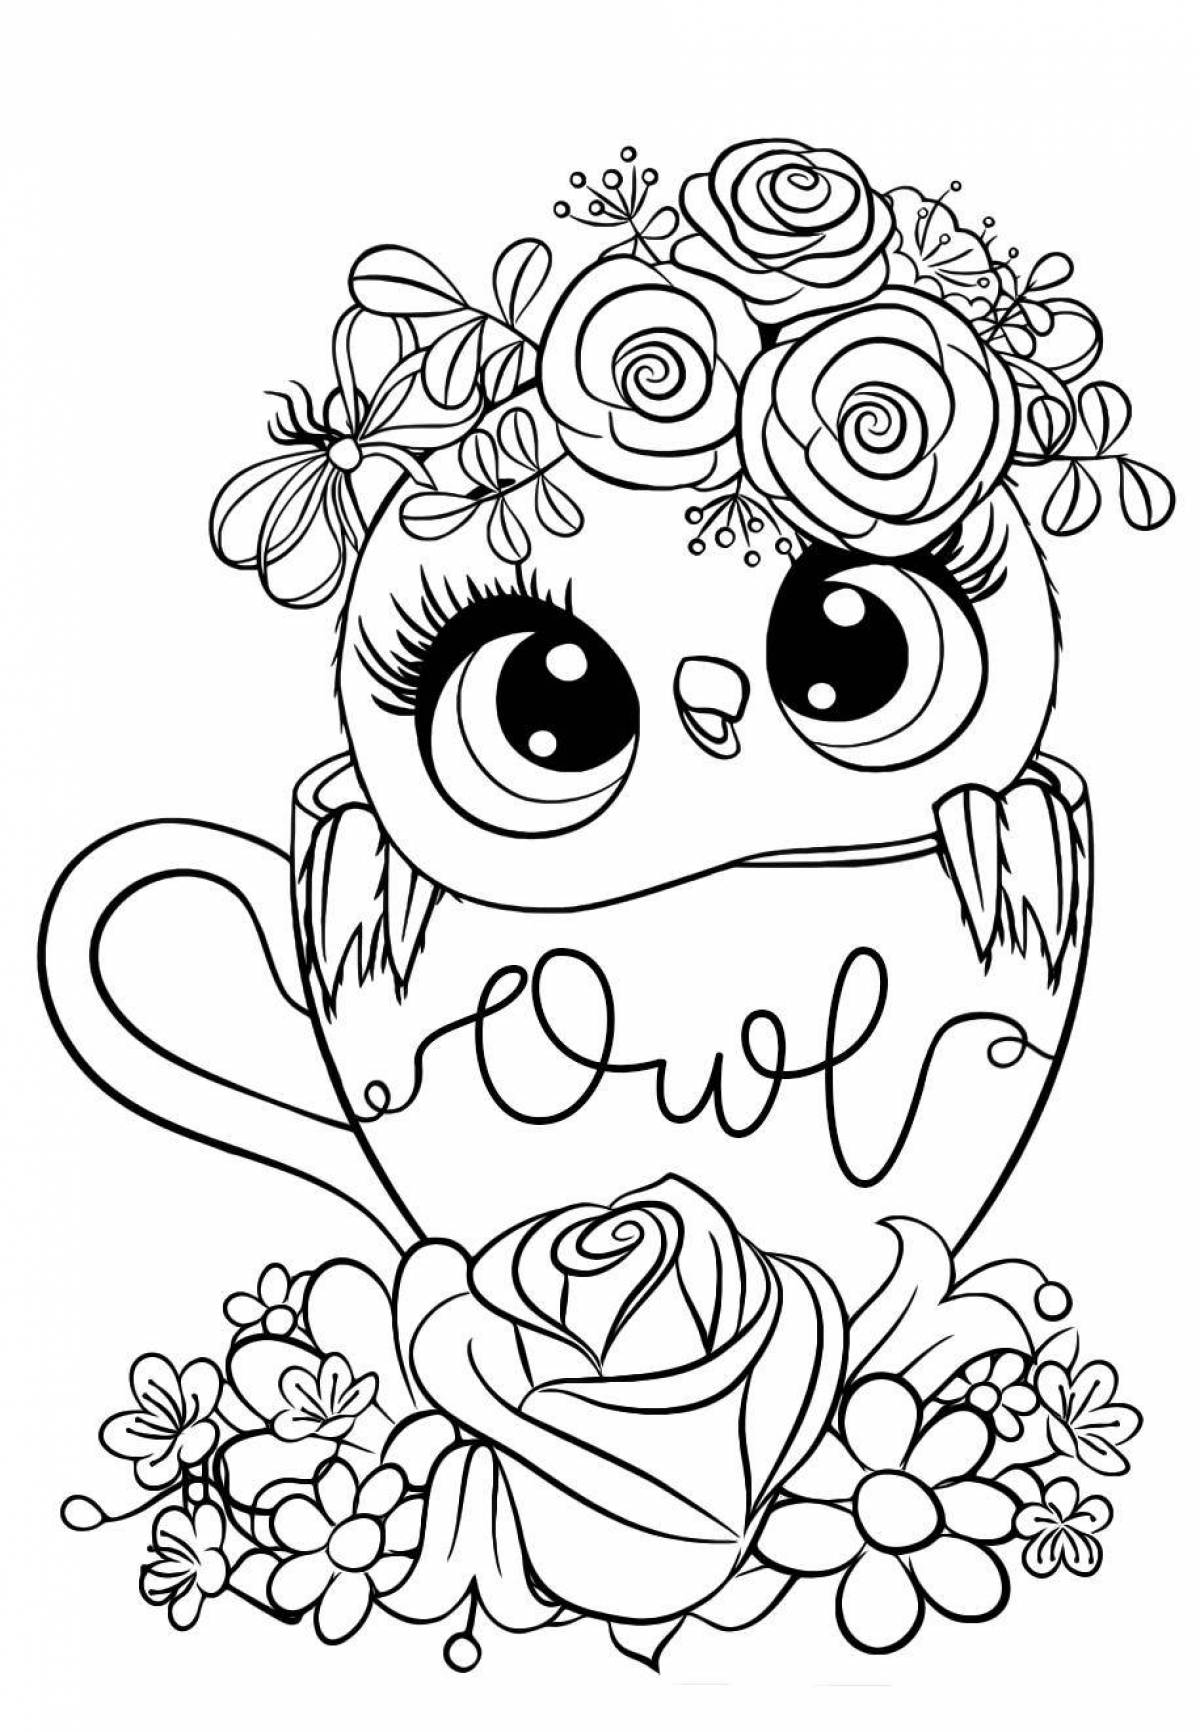 Adorable cute owl coloring book